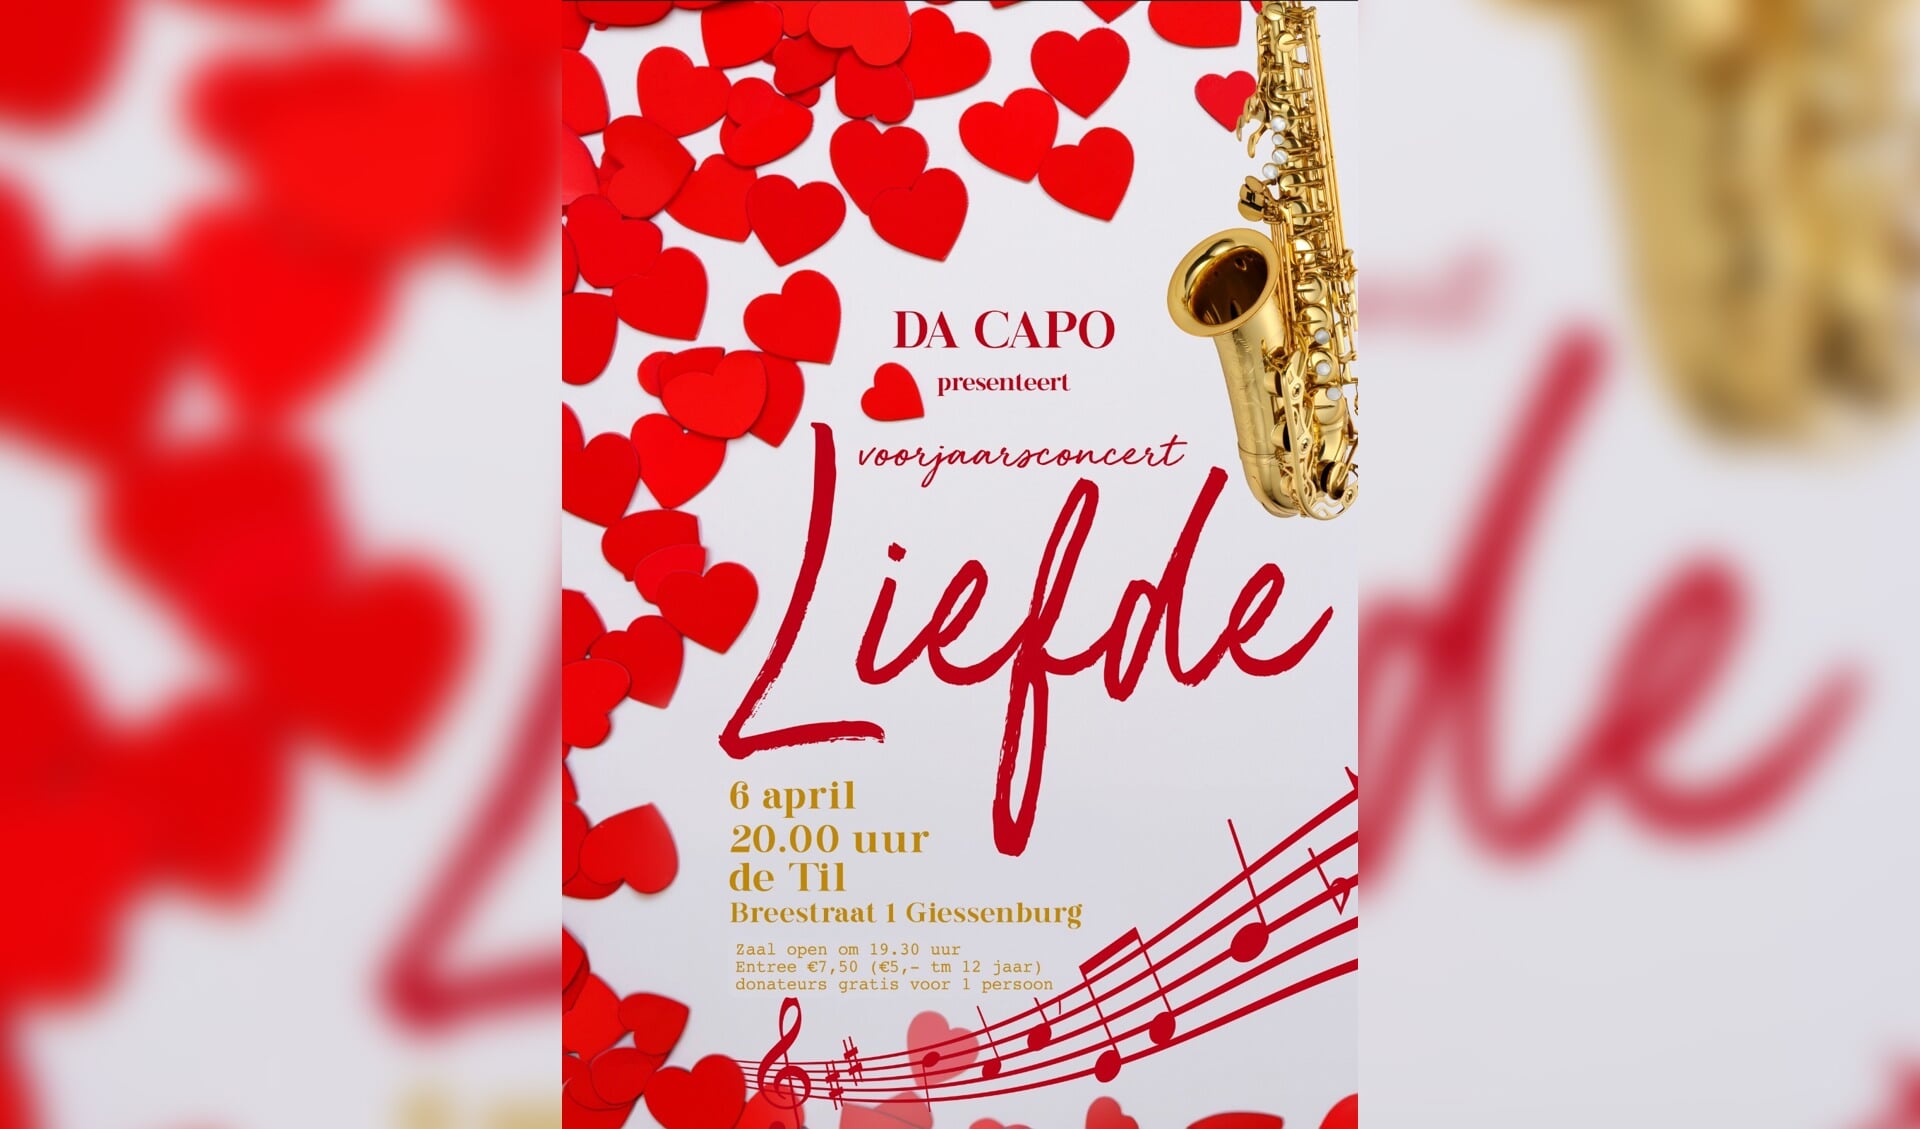 • Voorjaarsconcert Da Capo 'Liefde'. 